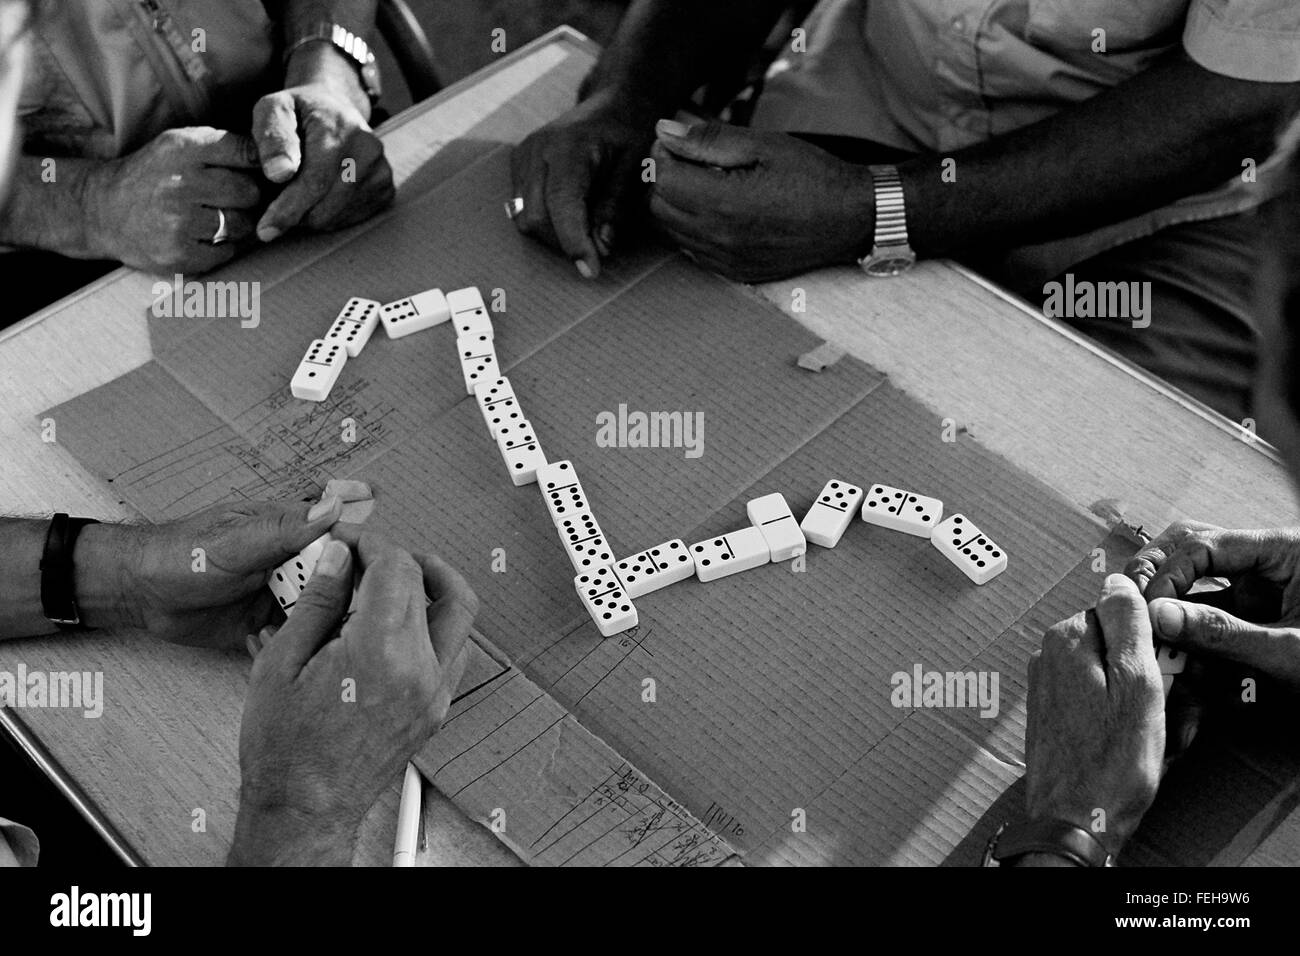 AJAXNETPHOTO. CANNES, Francia. - GAME OVER - Un gioco di domino IN CORSO IN UN PARCO vicino alla Croisette. Foto:JONATHAN EASTLAND/AJAX REF:CD74_31709_12 Foto Stock